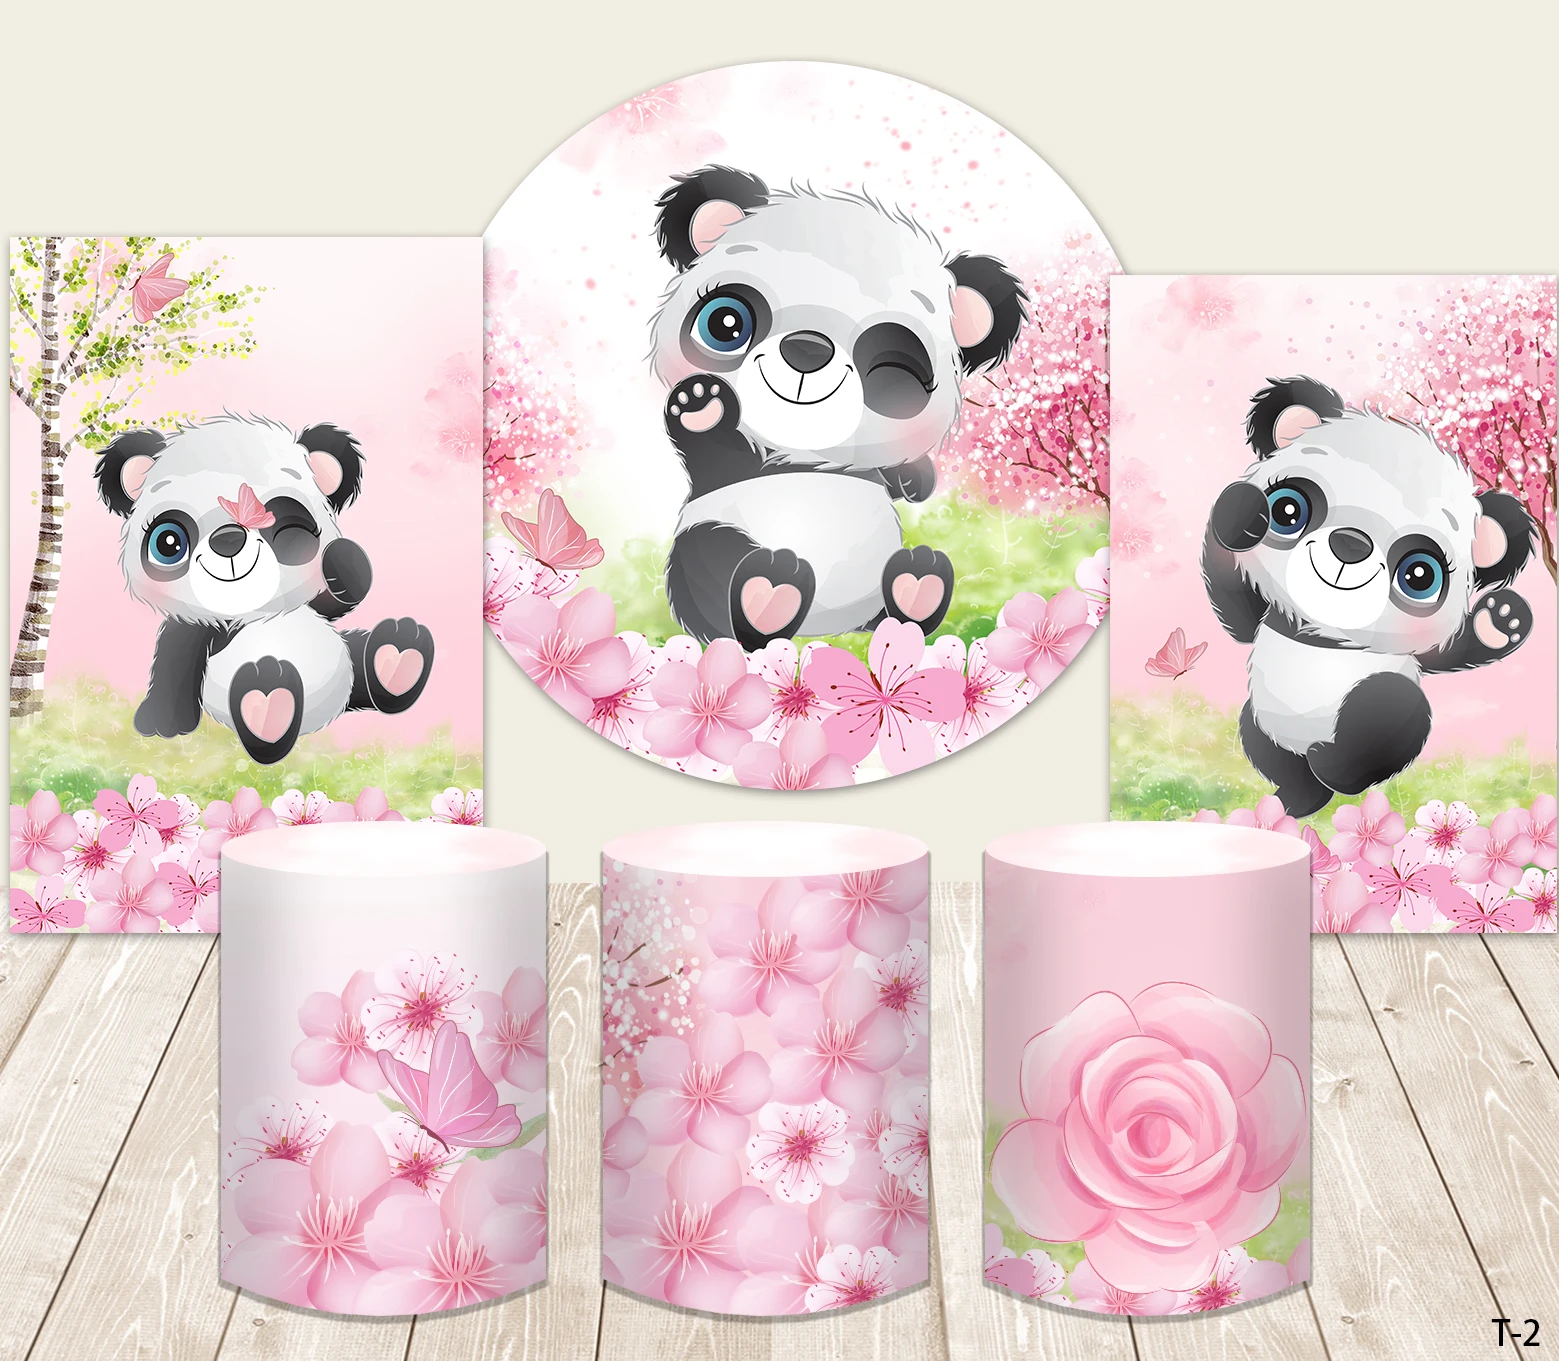 

Круглая задняя крышка для детского праздника розовое украшение для дня рождения для девочек Милая панда тема Конфеты стол Баннер круг фон